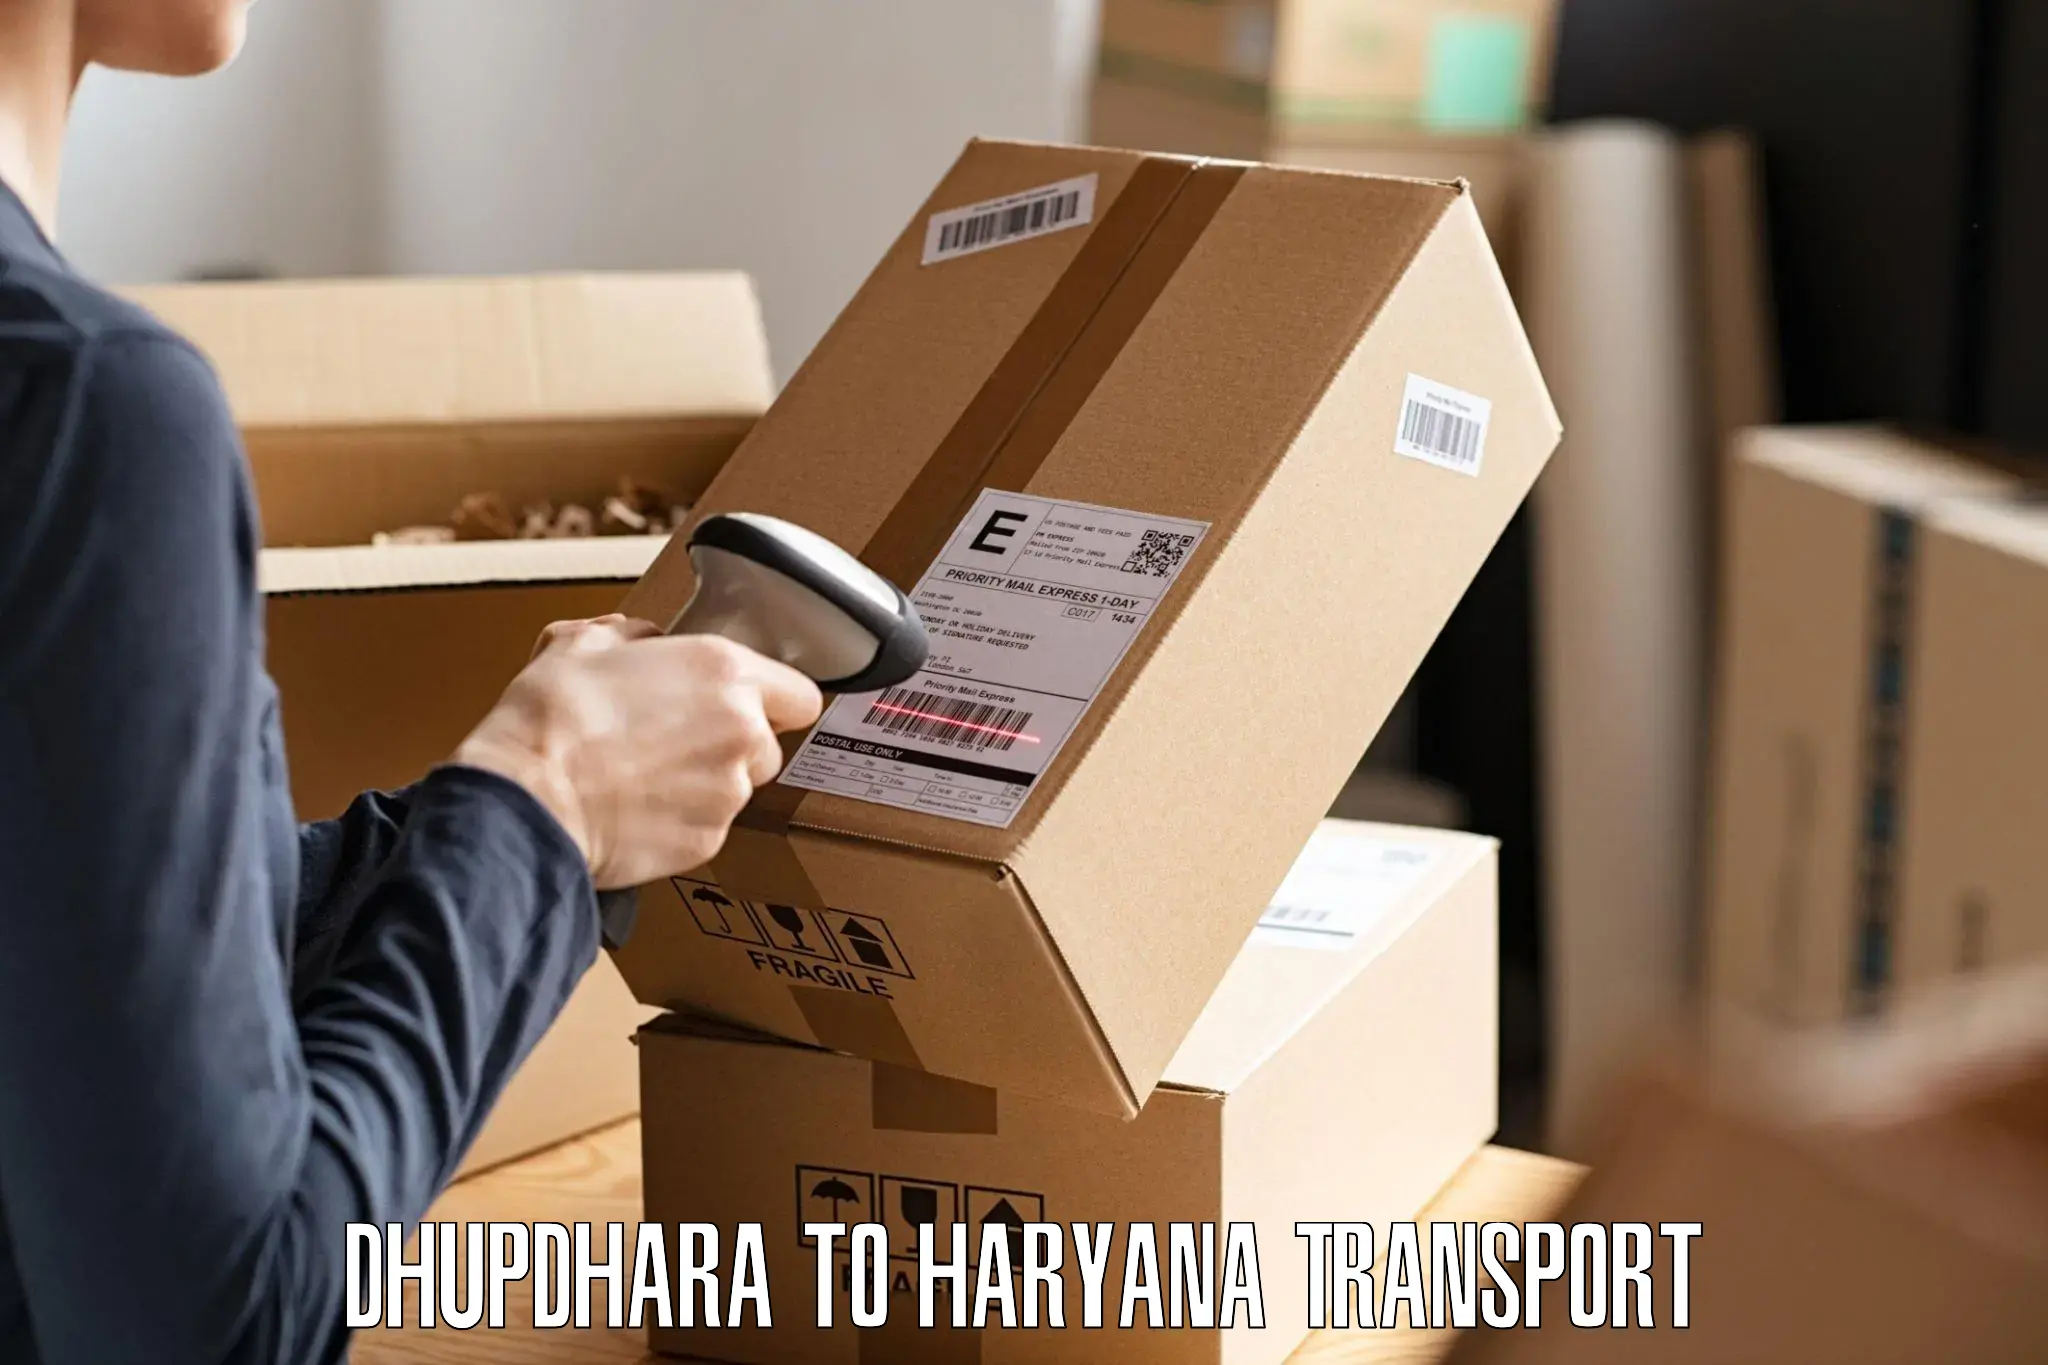 Daily transport service Dhupdhara to Kurukshetra University